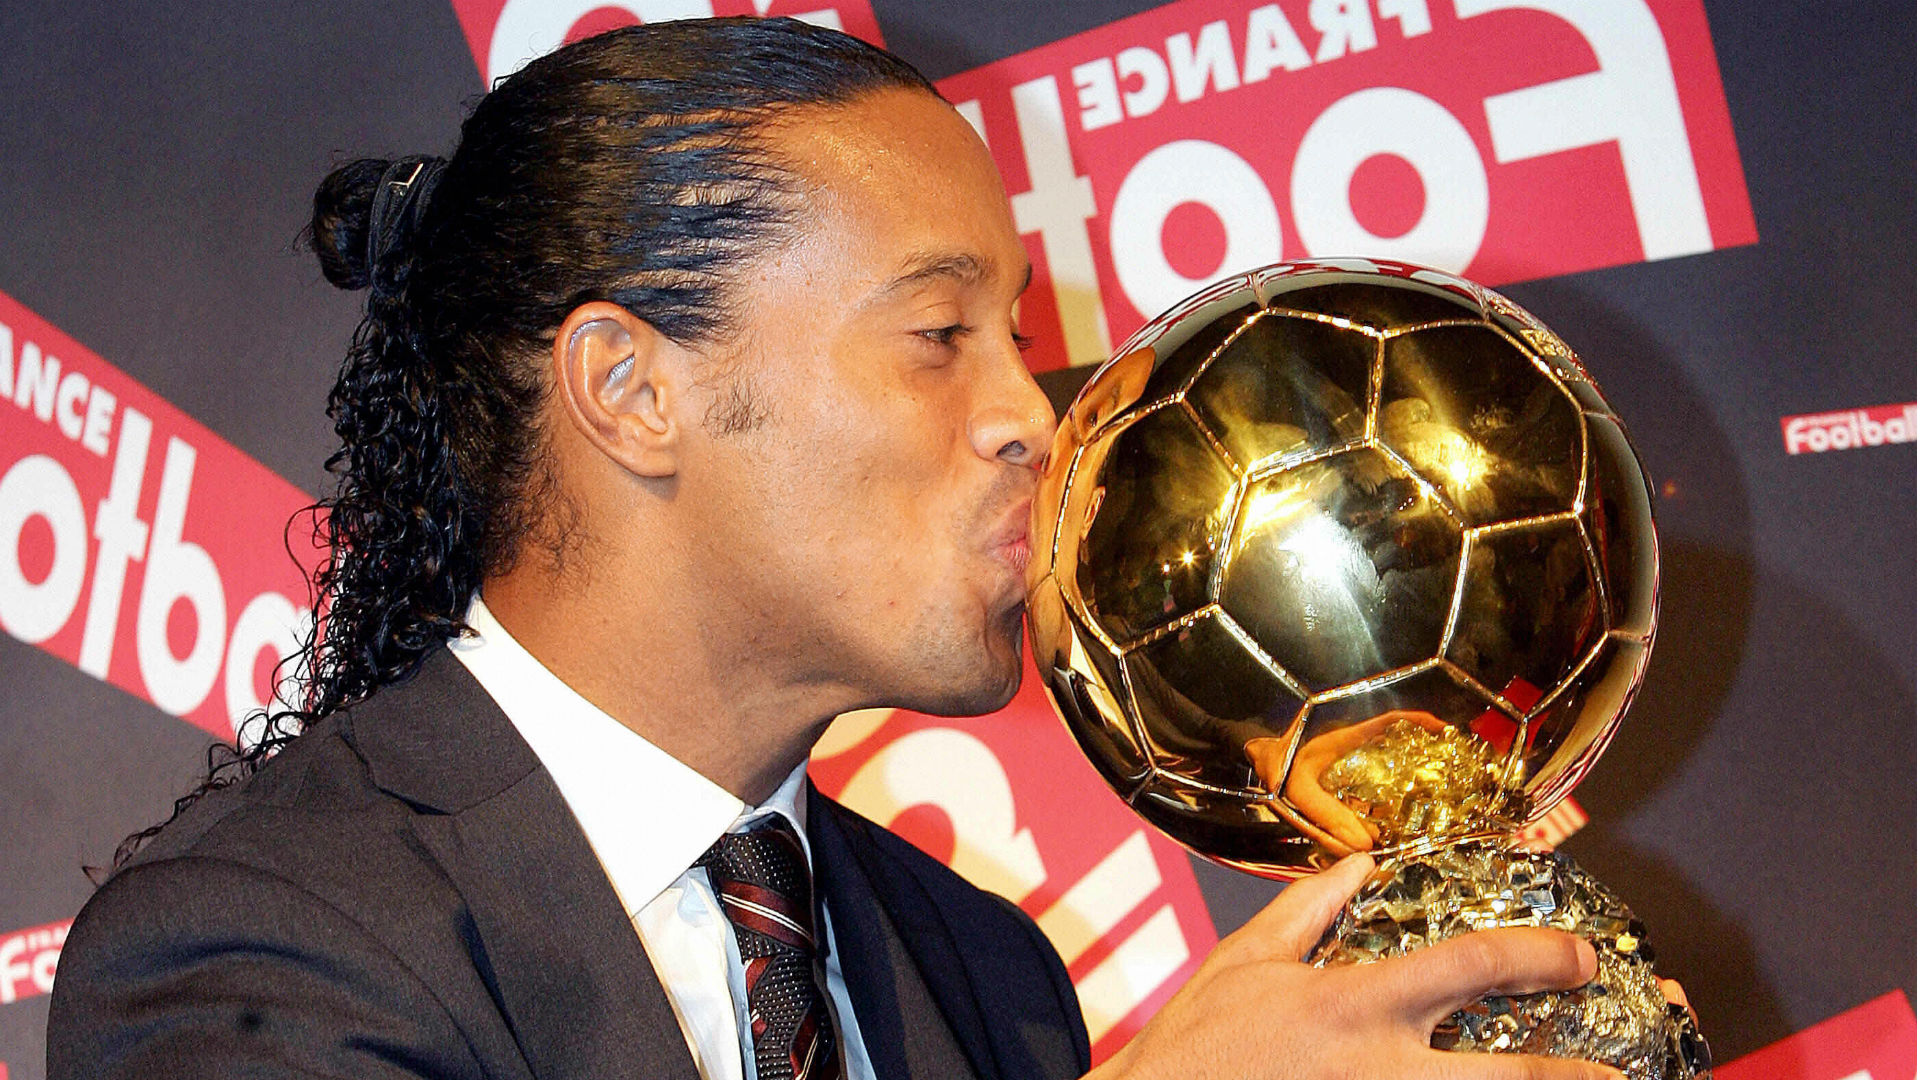 Brilhando nos gramados espanhóis e com a camisa do Barcelona, Ronaldinho conseguiu ganhar o prêmio de melhor jogador do mundo por dois anos seguidos: 2004 e 2005